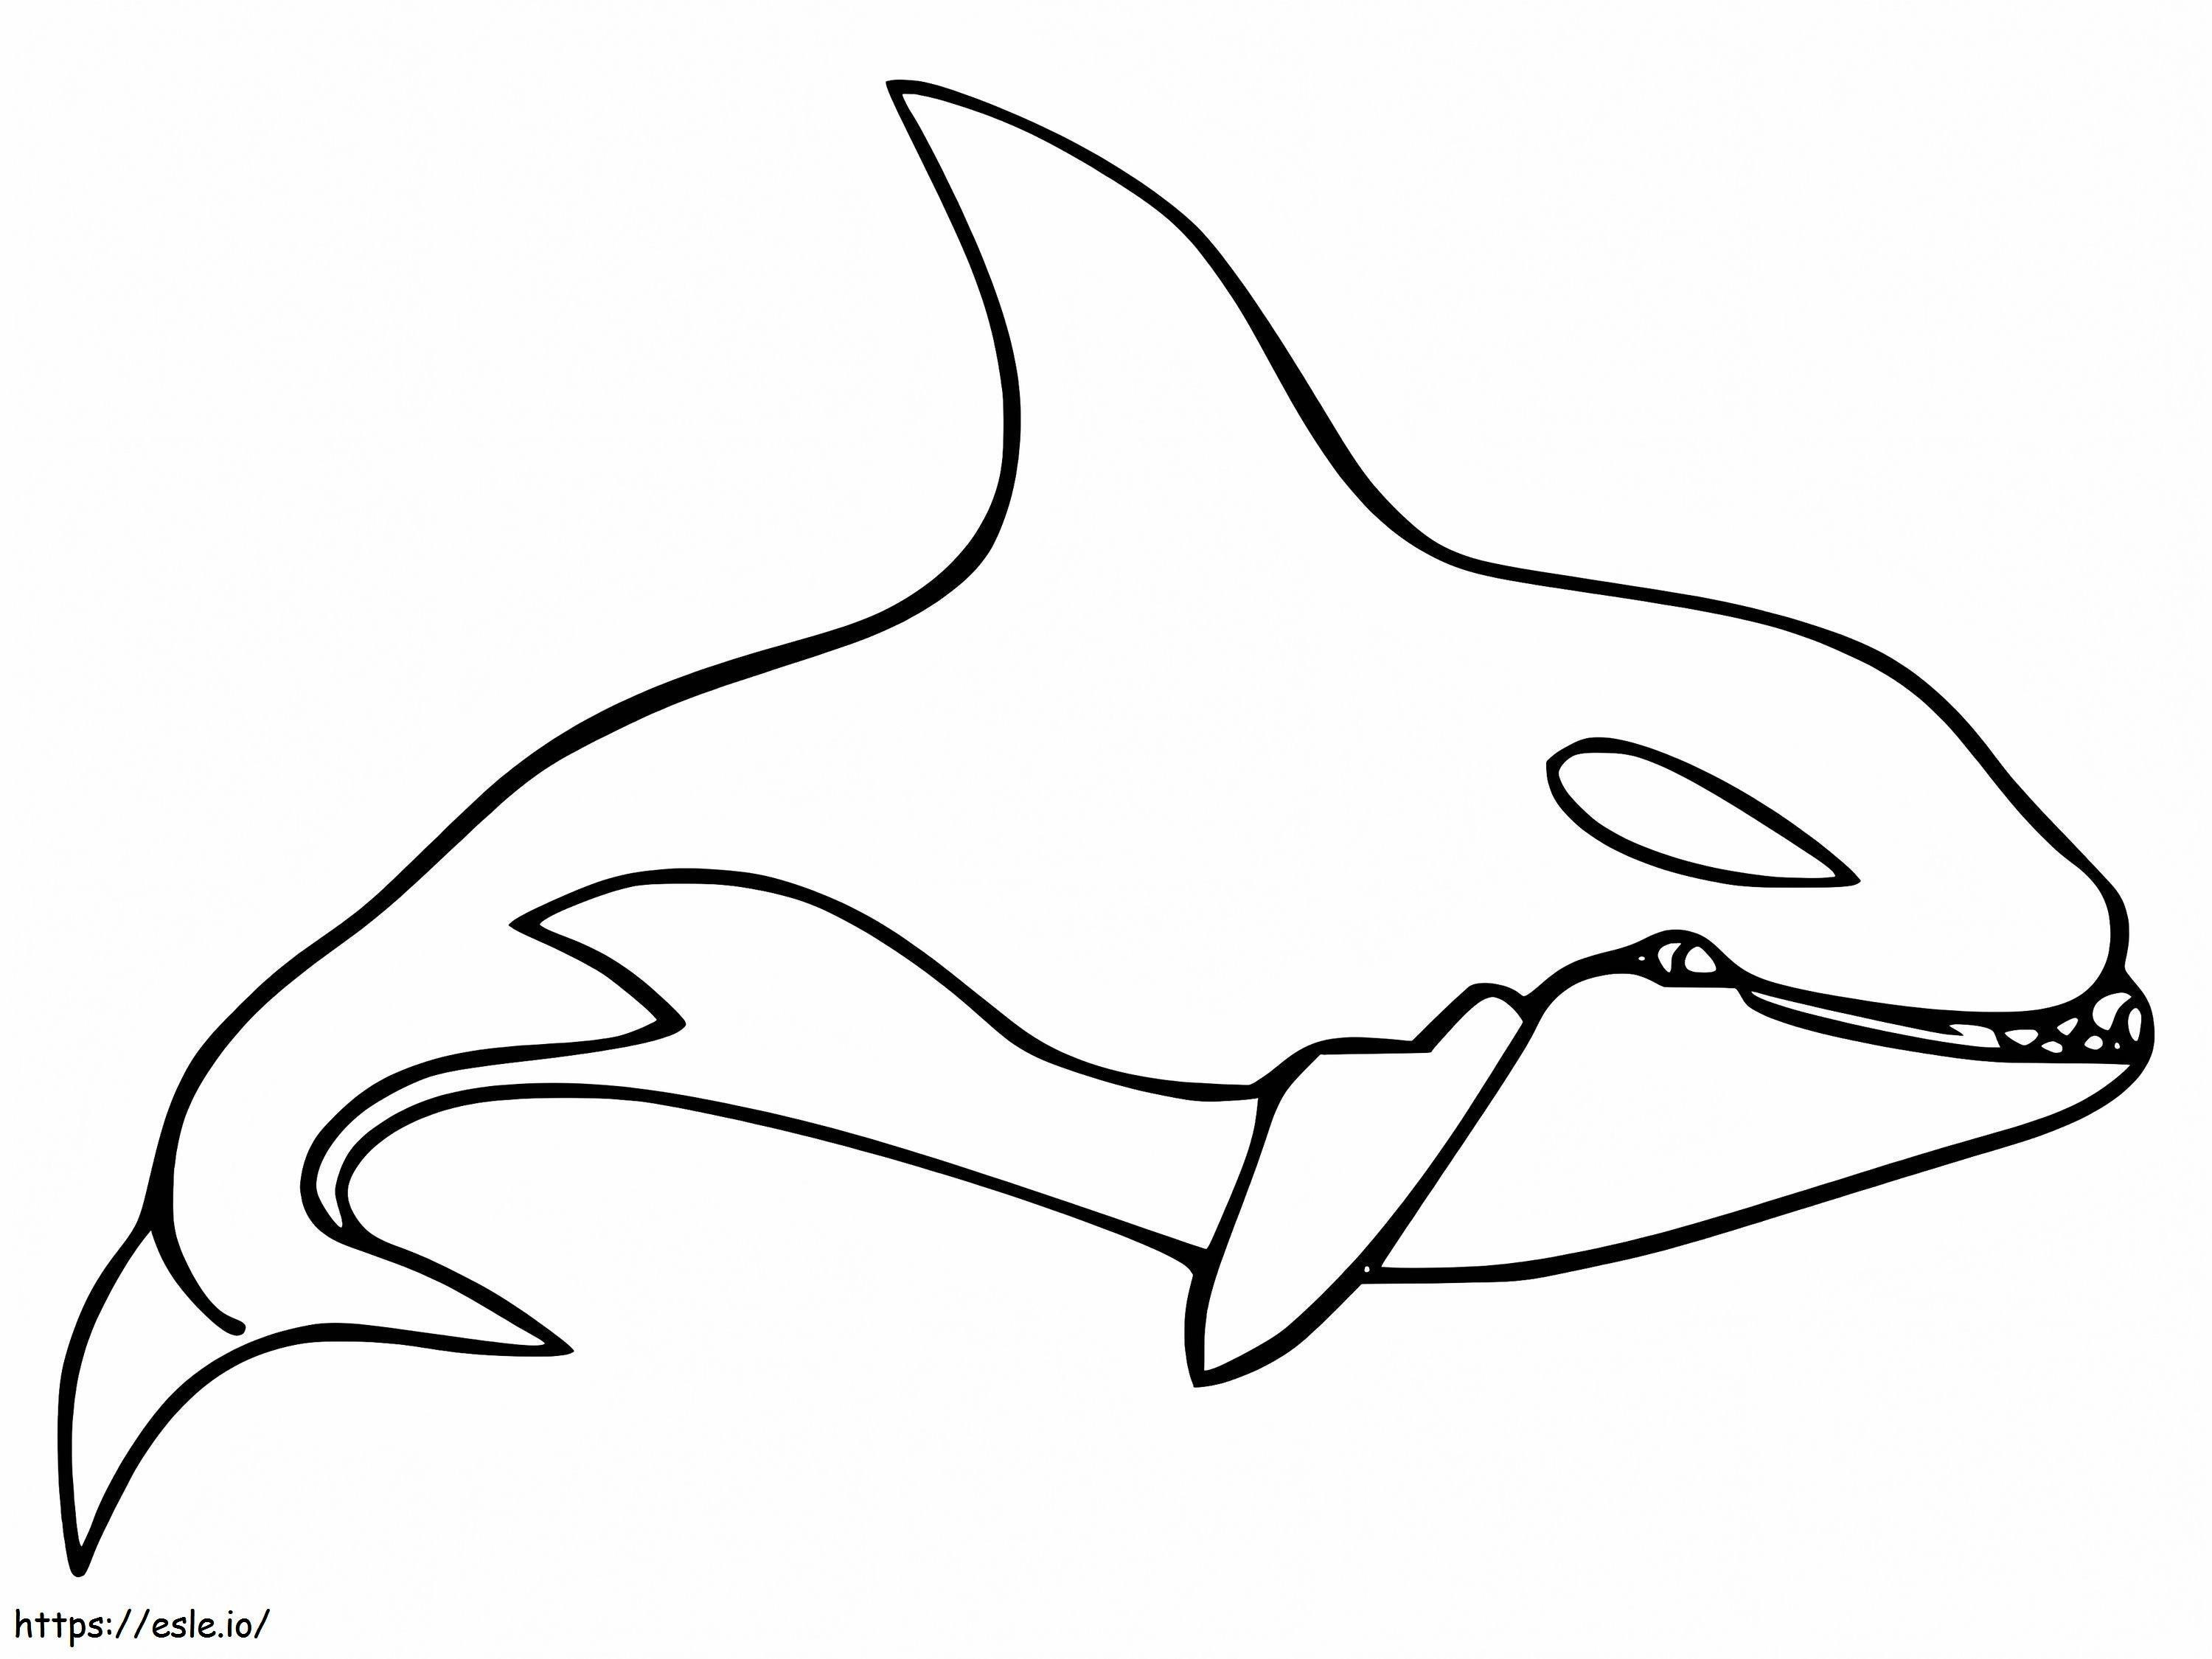 Kostenloser Killerwal ausmalbilder